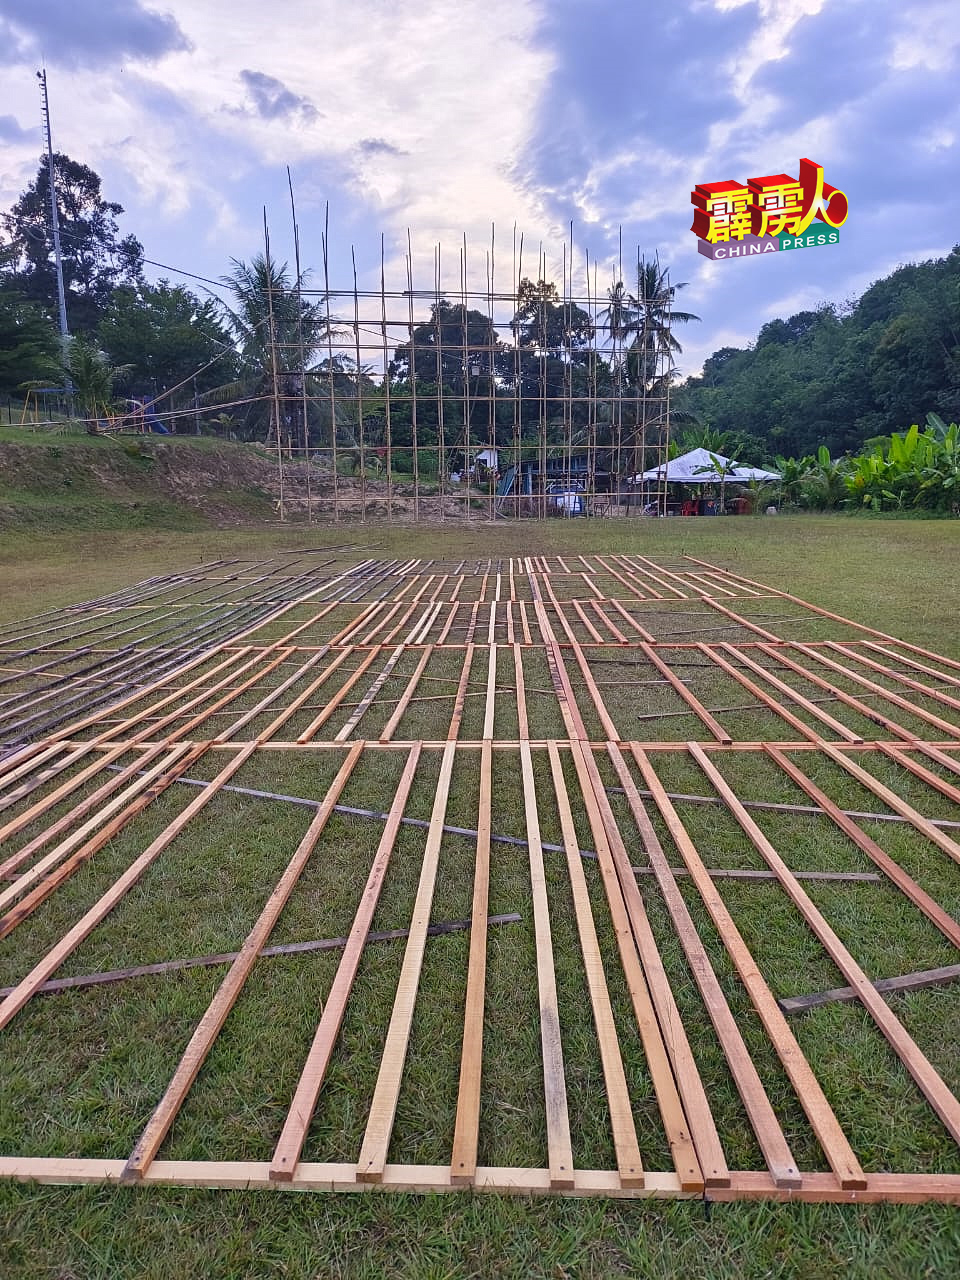 甘榜立布村民已经搭建好今年传统土油灯的竹棚架。